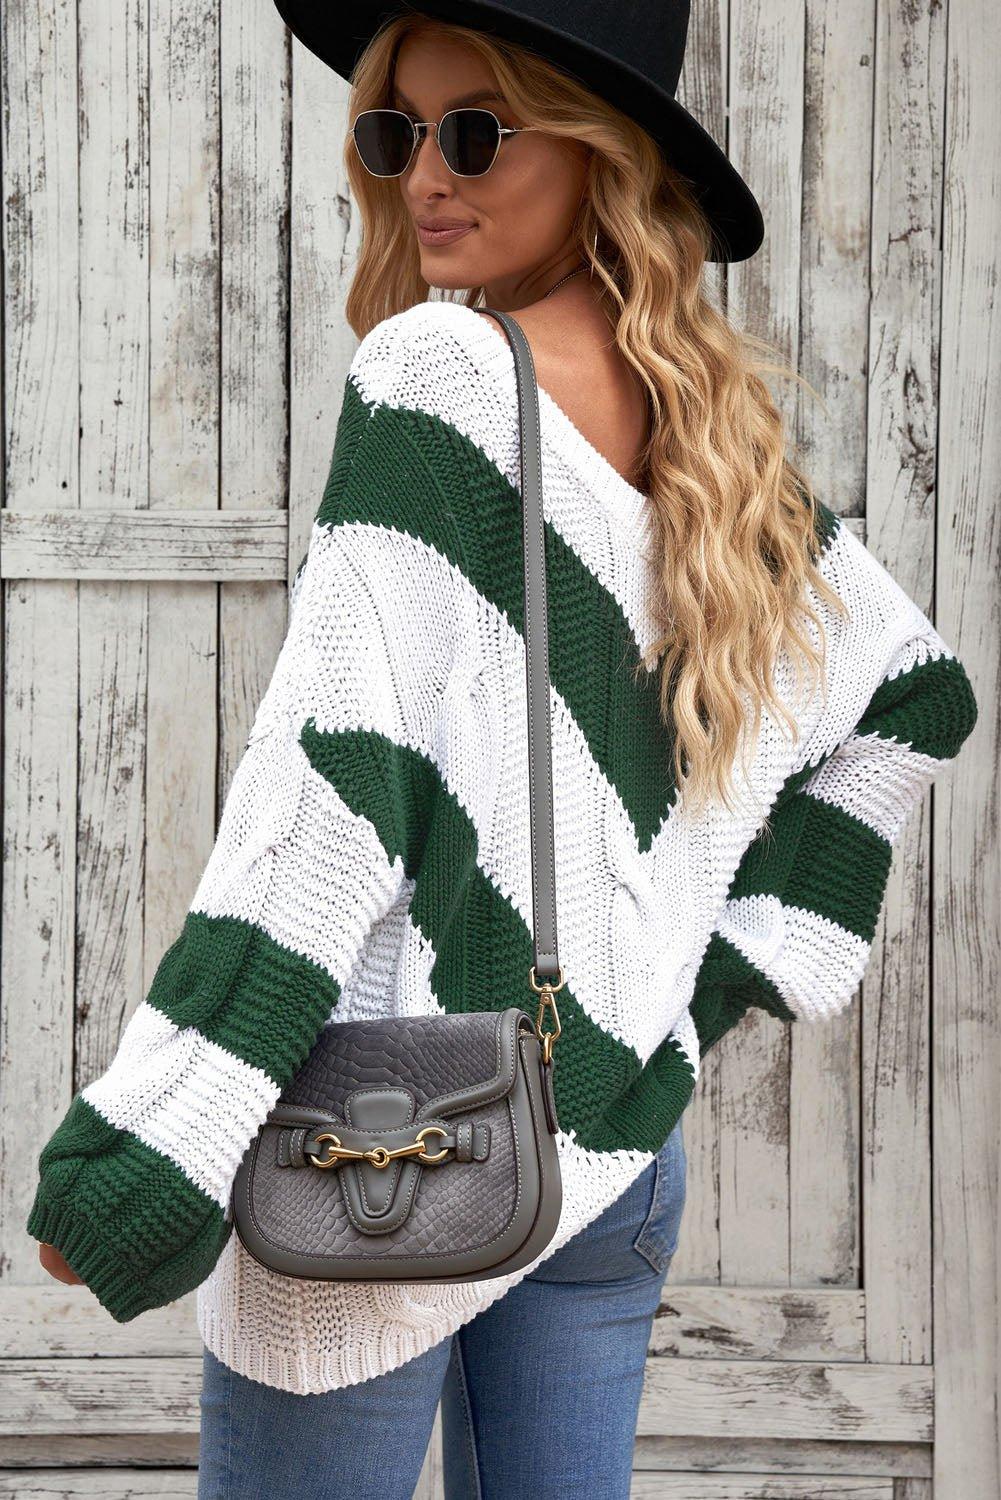 Woven Chevron Cable Knit Tunic Sweater - Klazzi Fashion Boutique